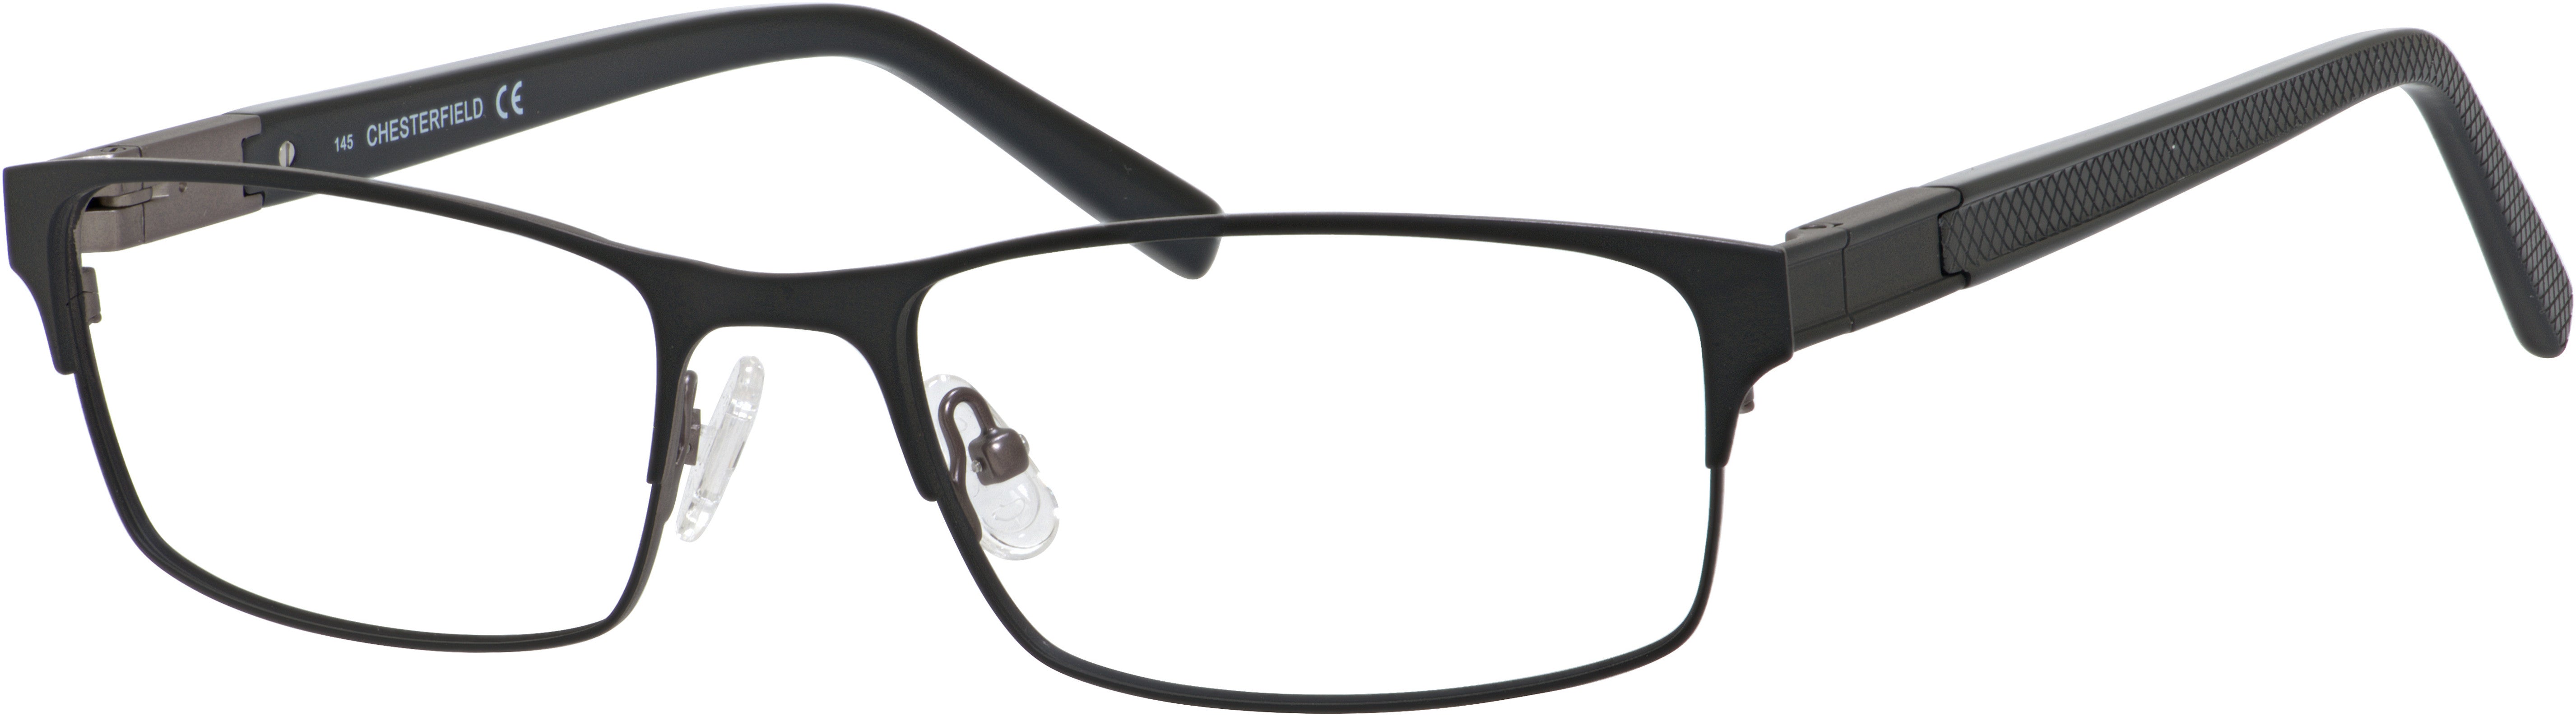  Chesterfield 46 XL Rectangular Eyeglasses 0JVW-0JVW  Black (00 Demo Lens)